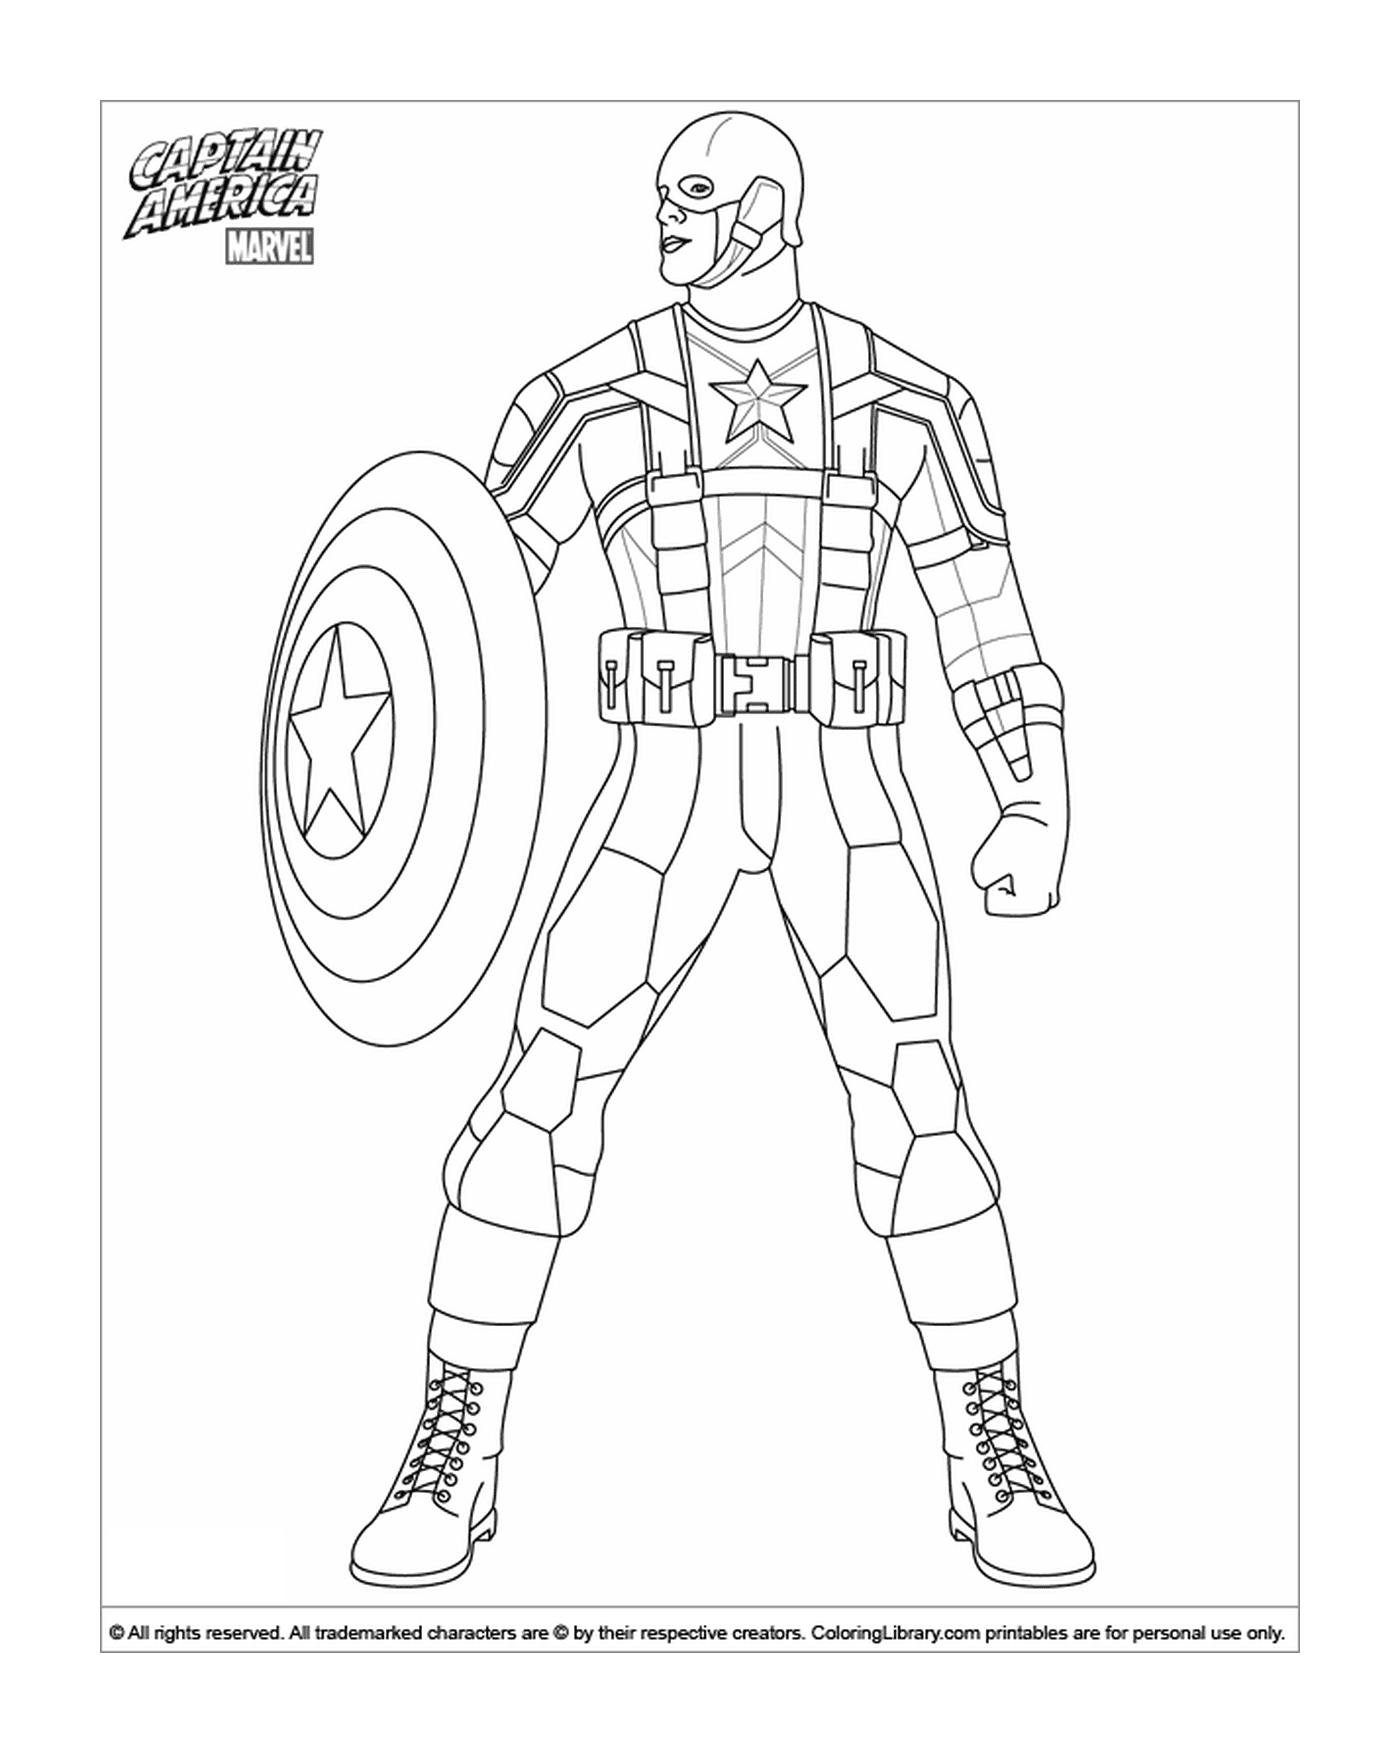  Uomo in Captain America vestito colorato 